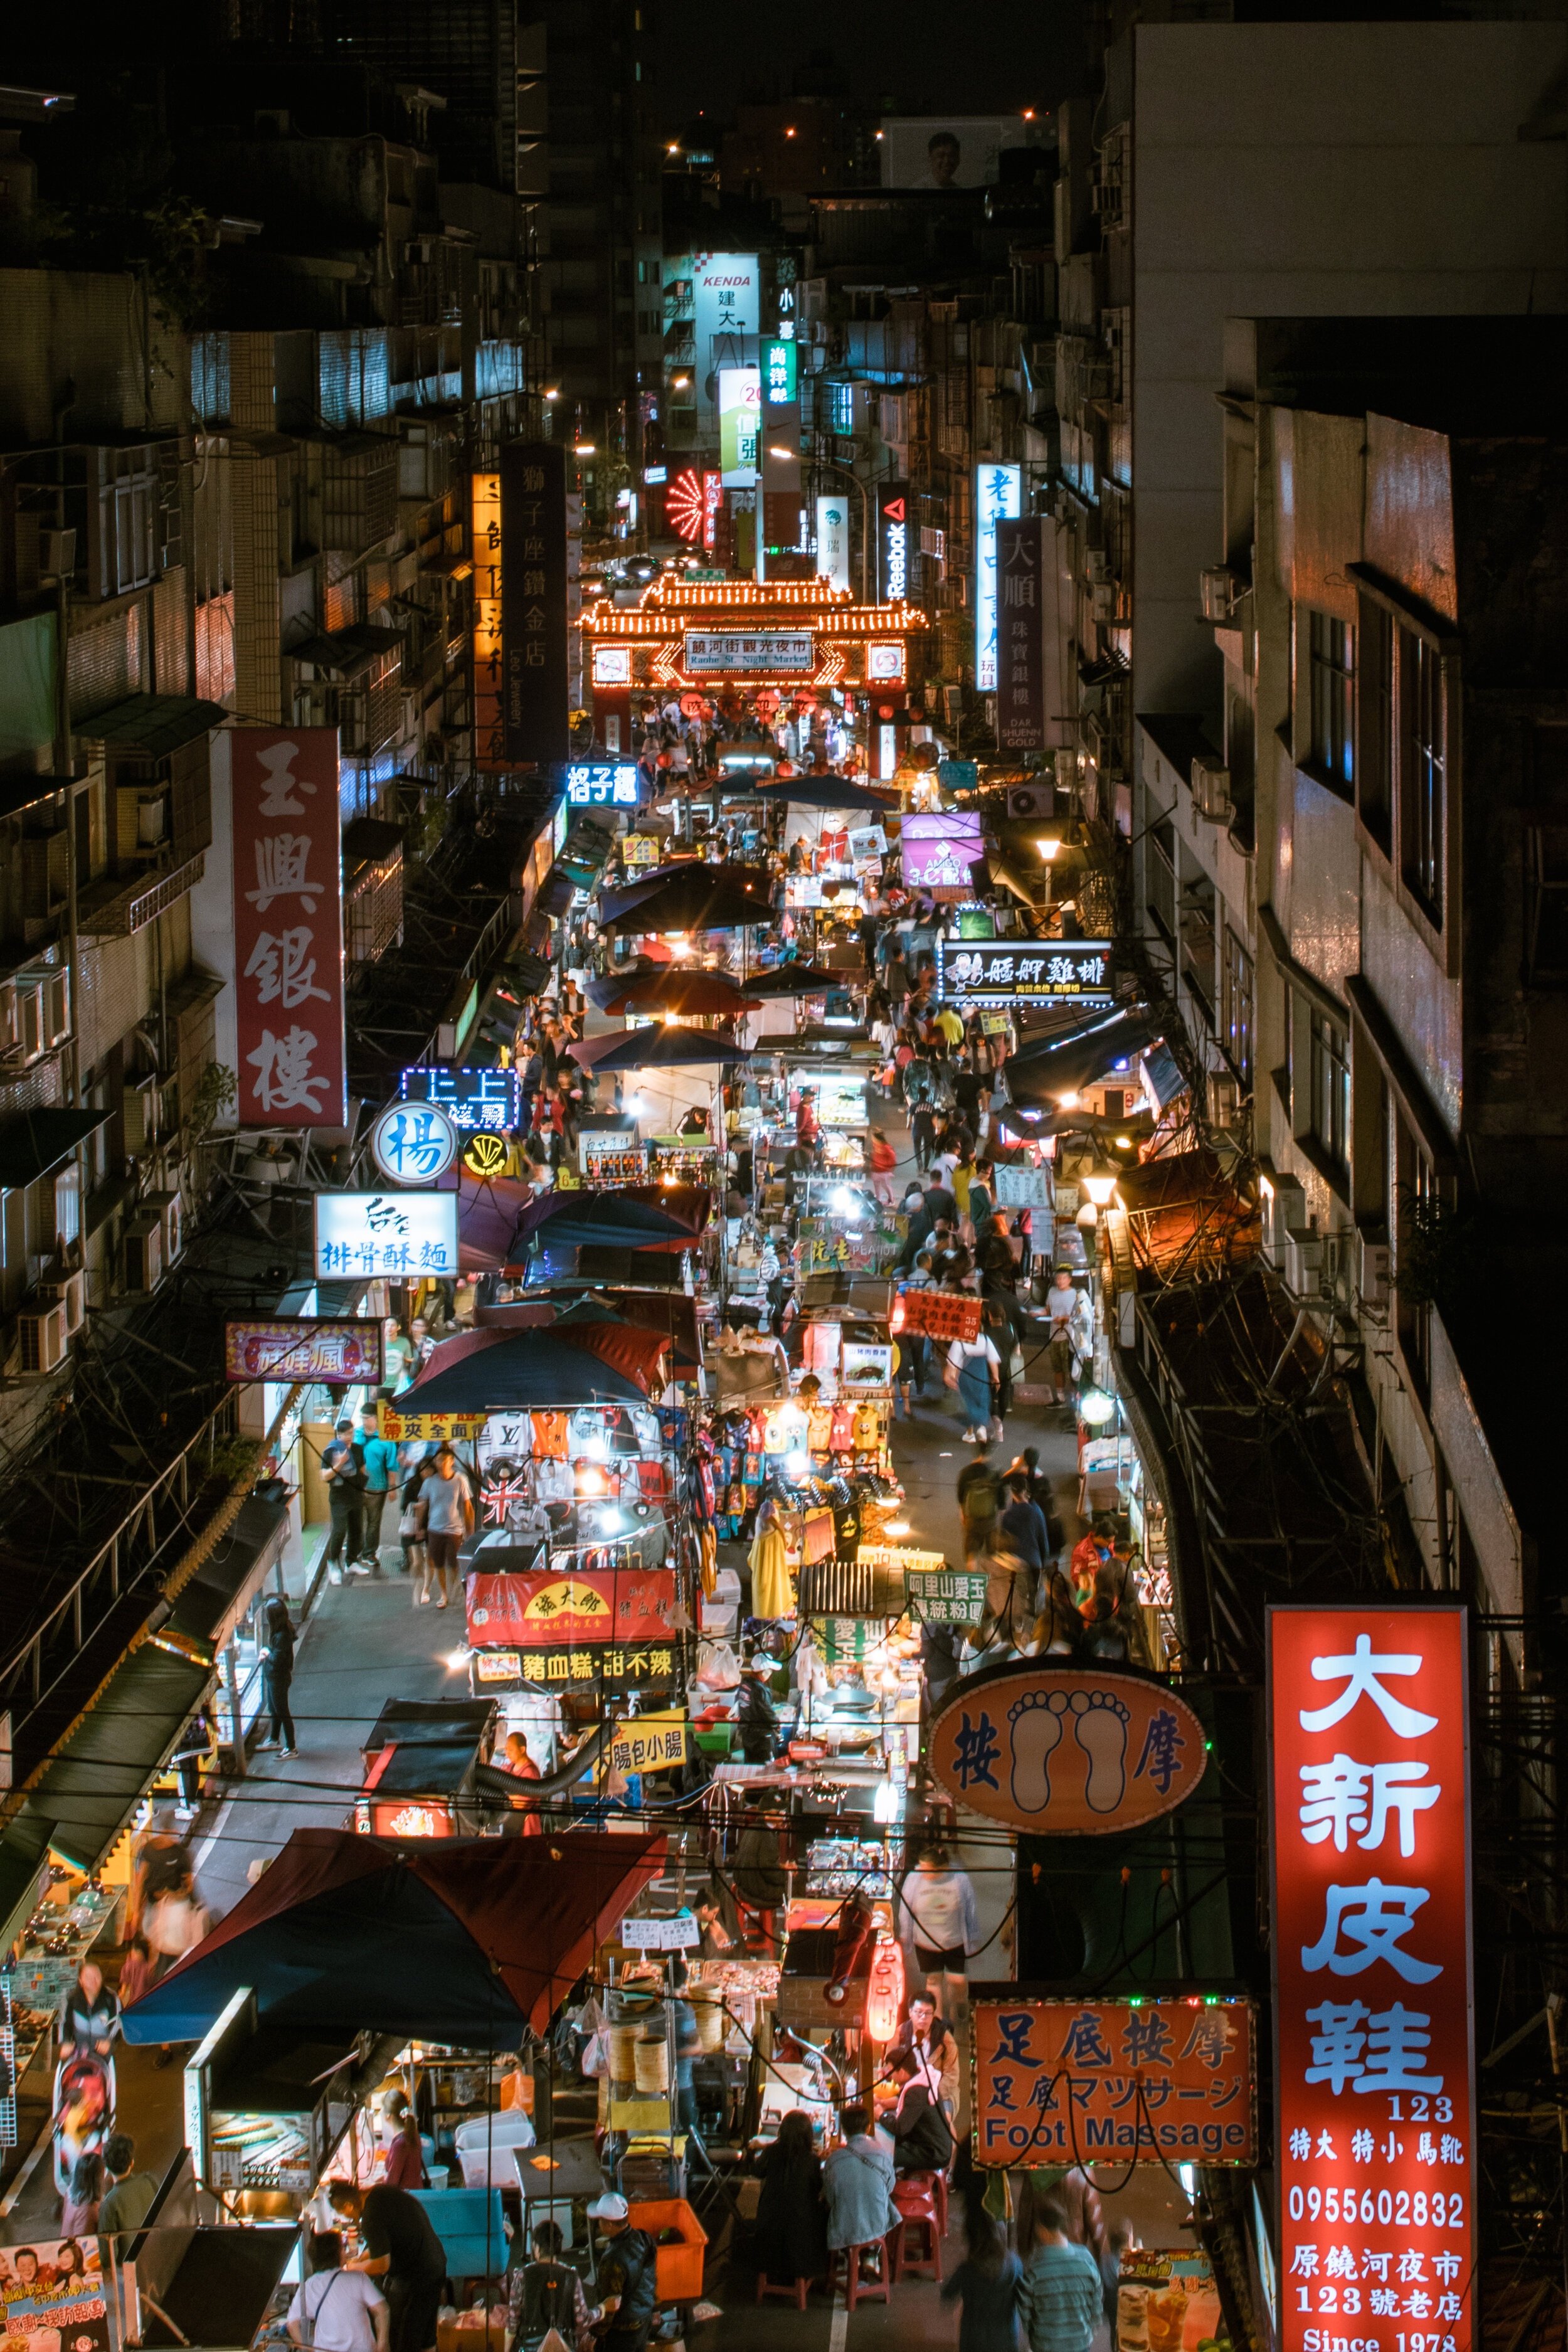  Raohe Night Market, Taipei   